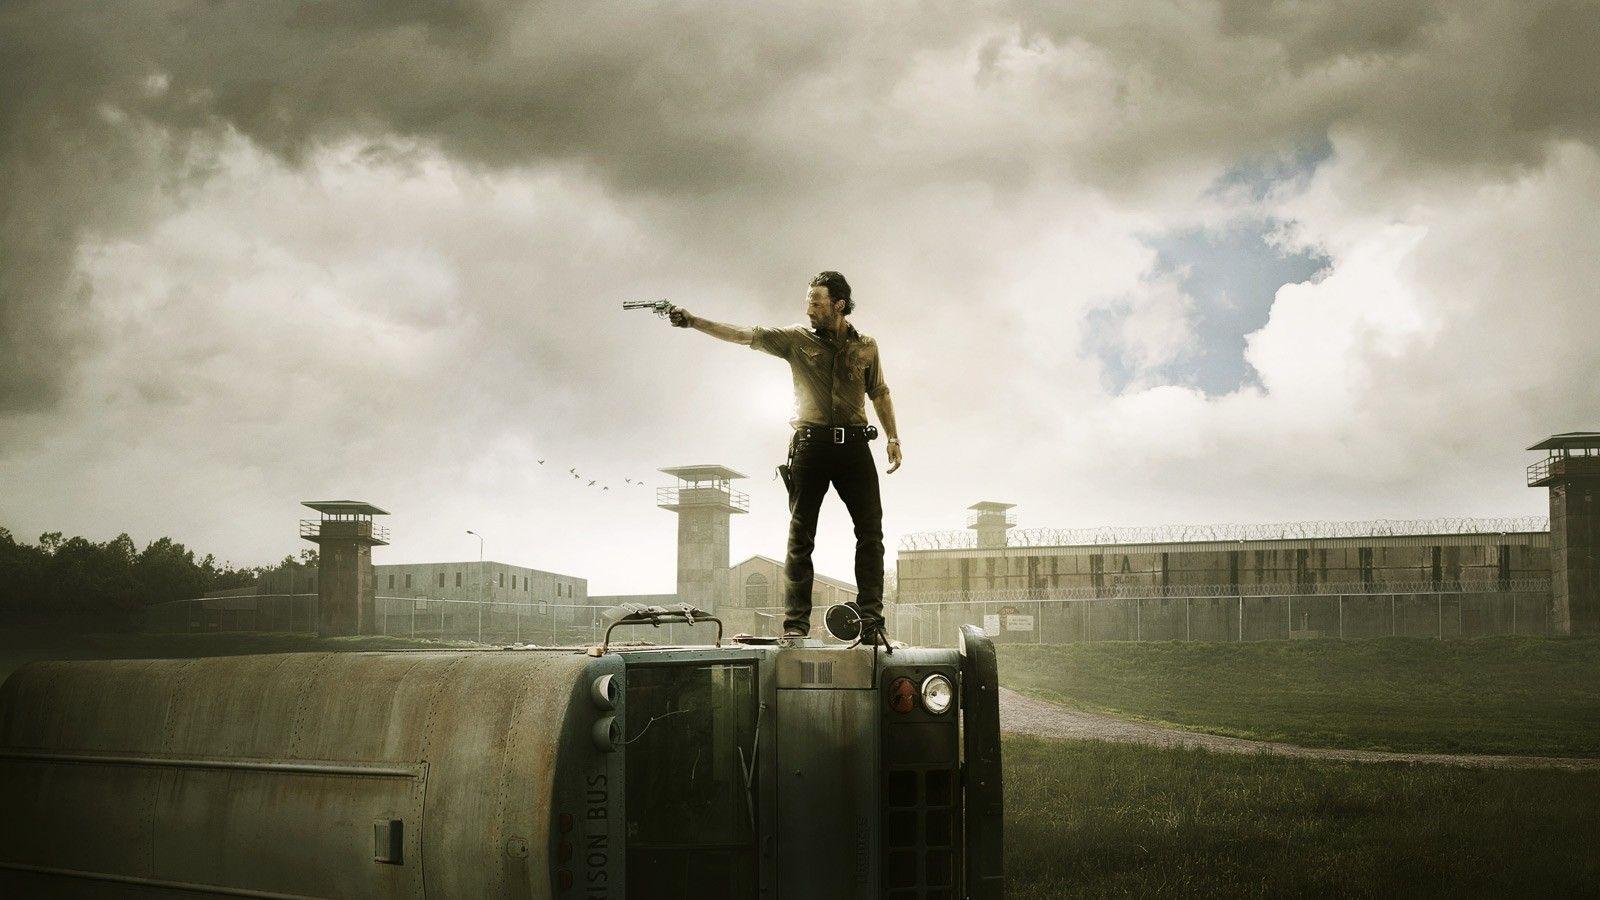 Walking Dead' meets 'Deadpool' in video, makes zombie apocalypse fun